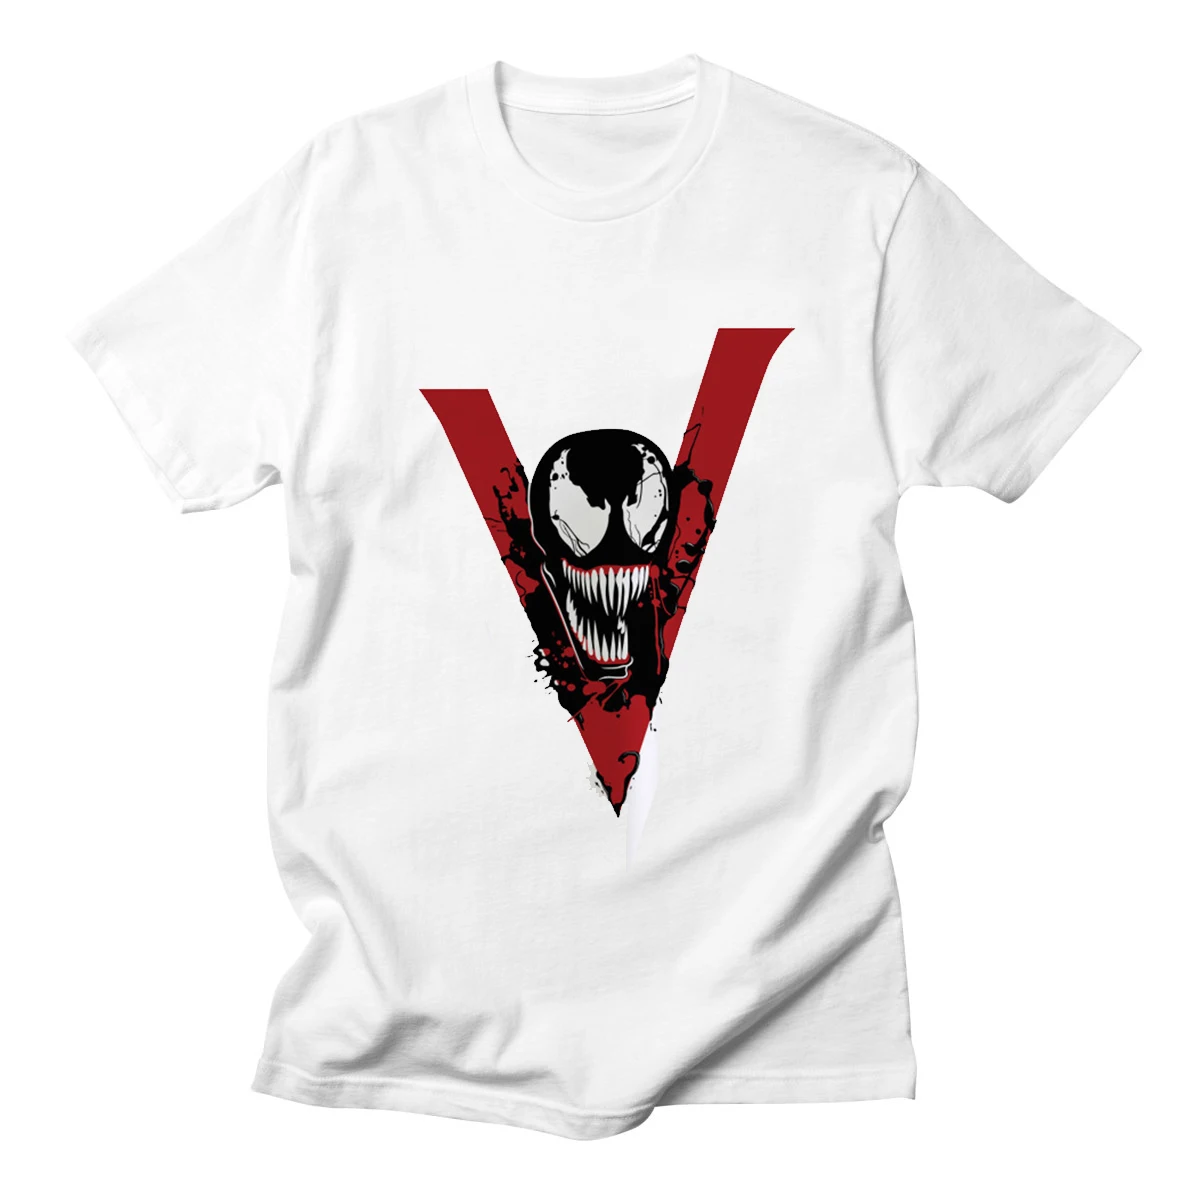 Venom Harajuku модная футболка мужская оригинальность Человек-паук хлопок фитнес забавная Футболка 100% хлопок футболка для человека